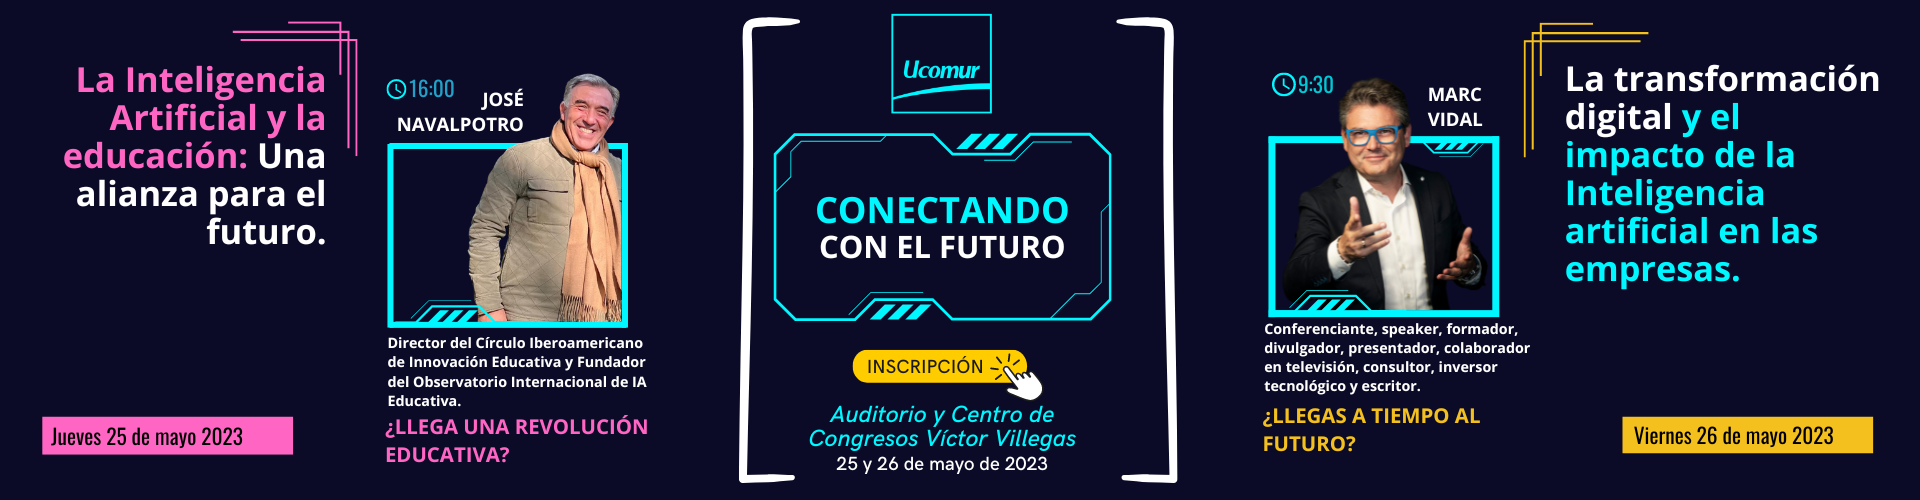 conecta con el futuro - jornadas sobre inteligencia artificial y transformación digital